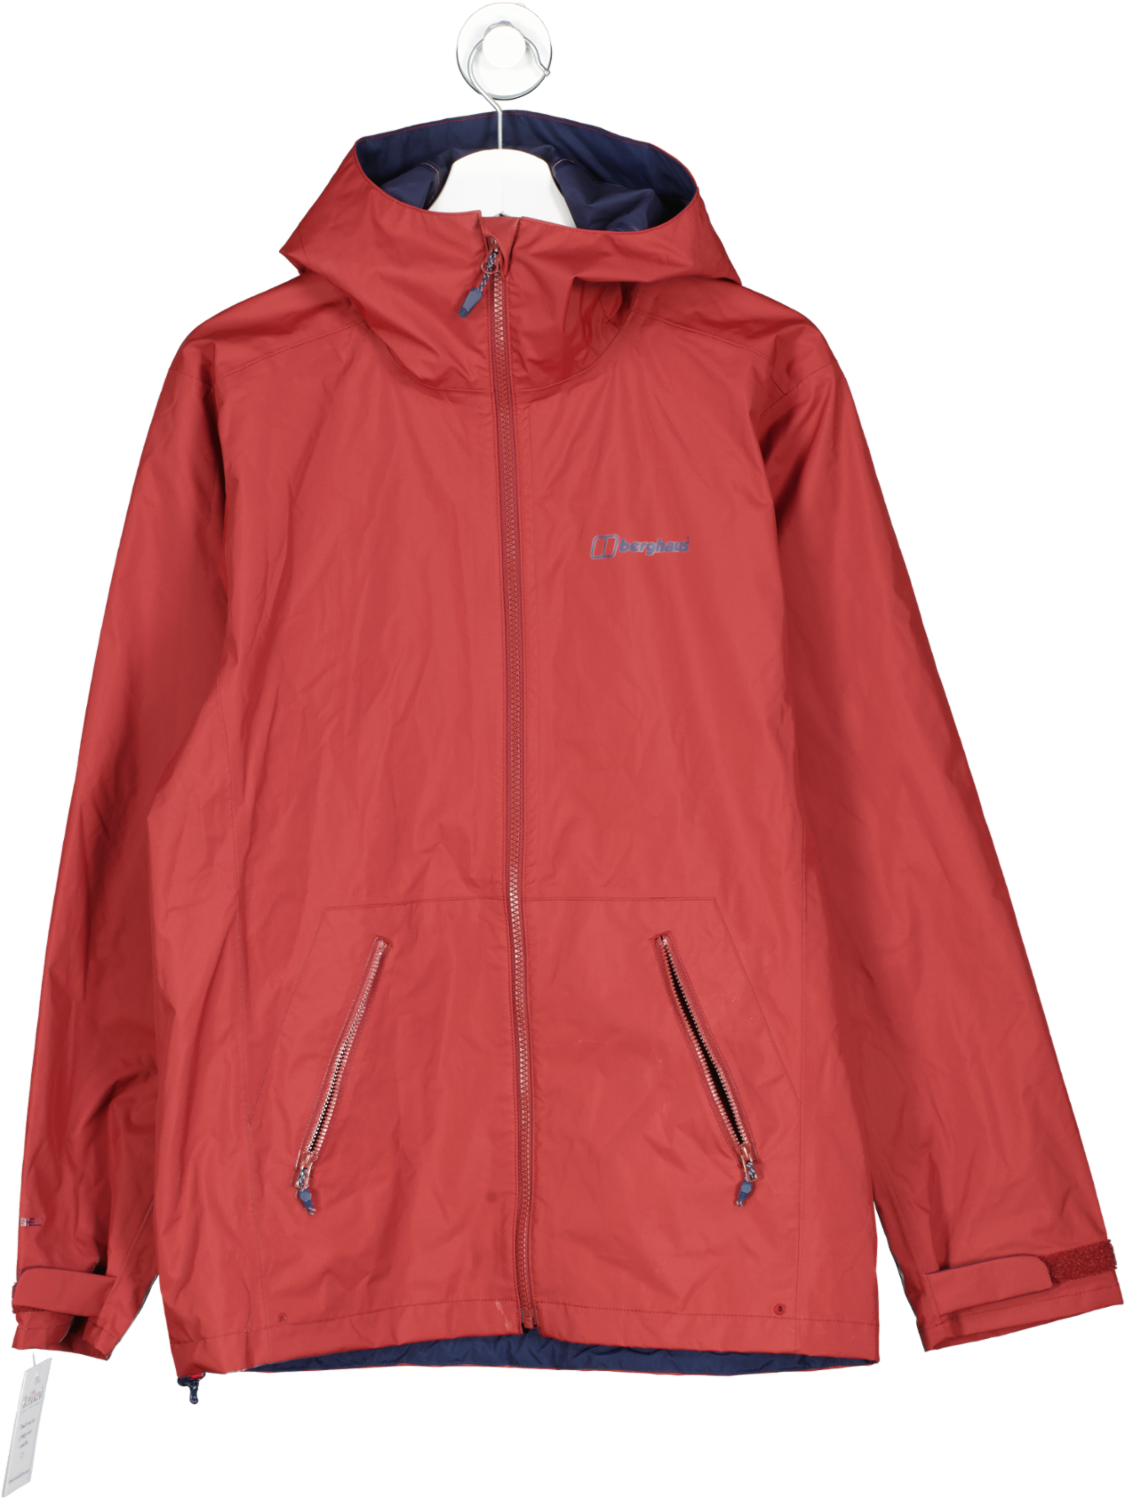 Berghaus Red Hooded Waterproof Jacket UK S